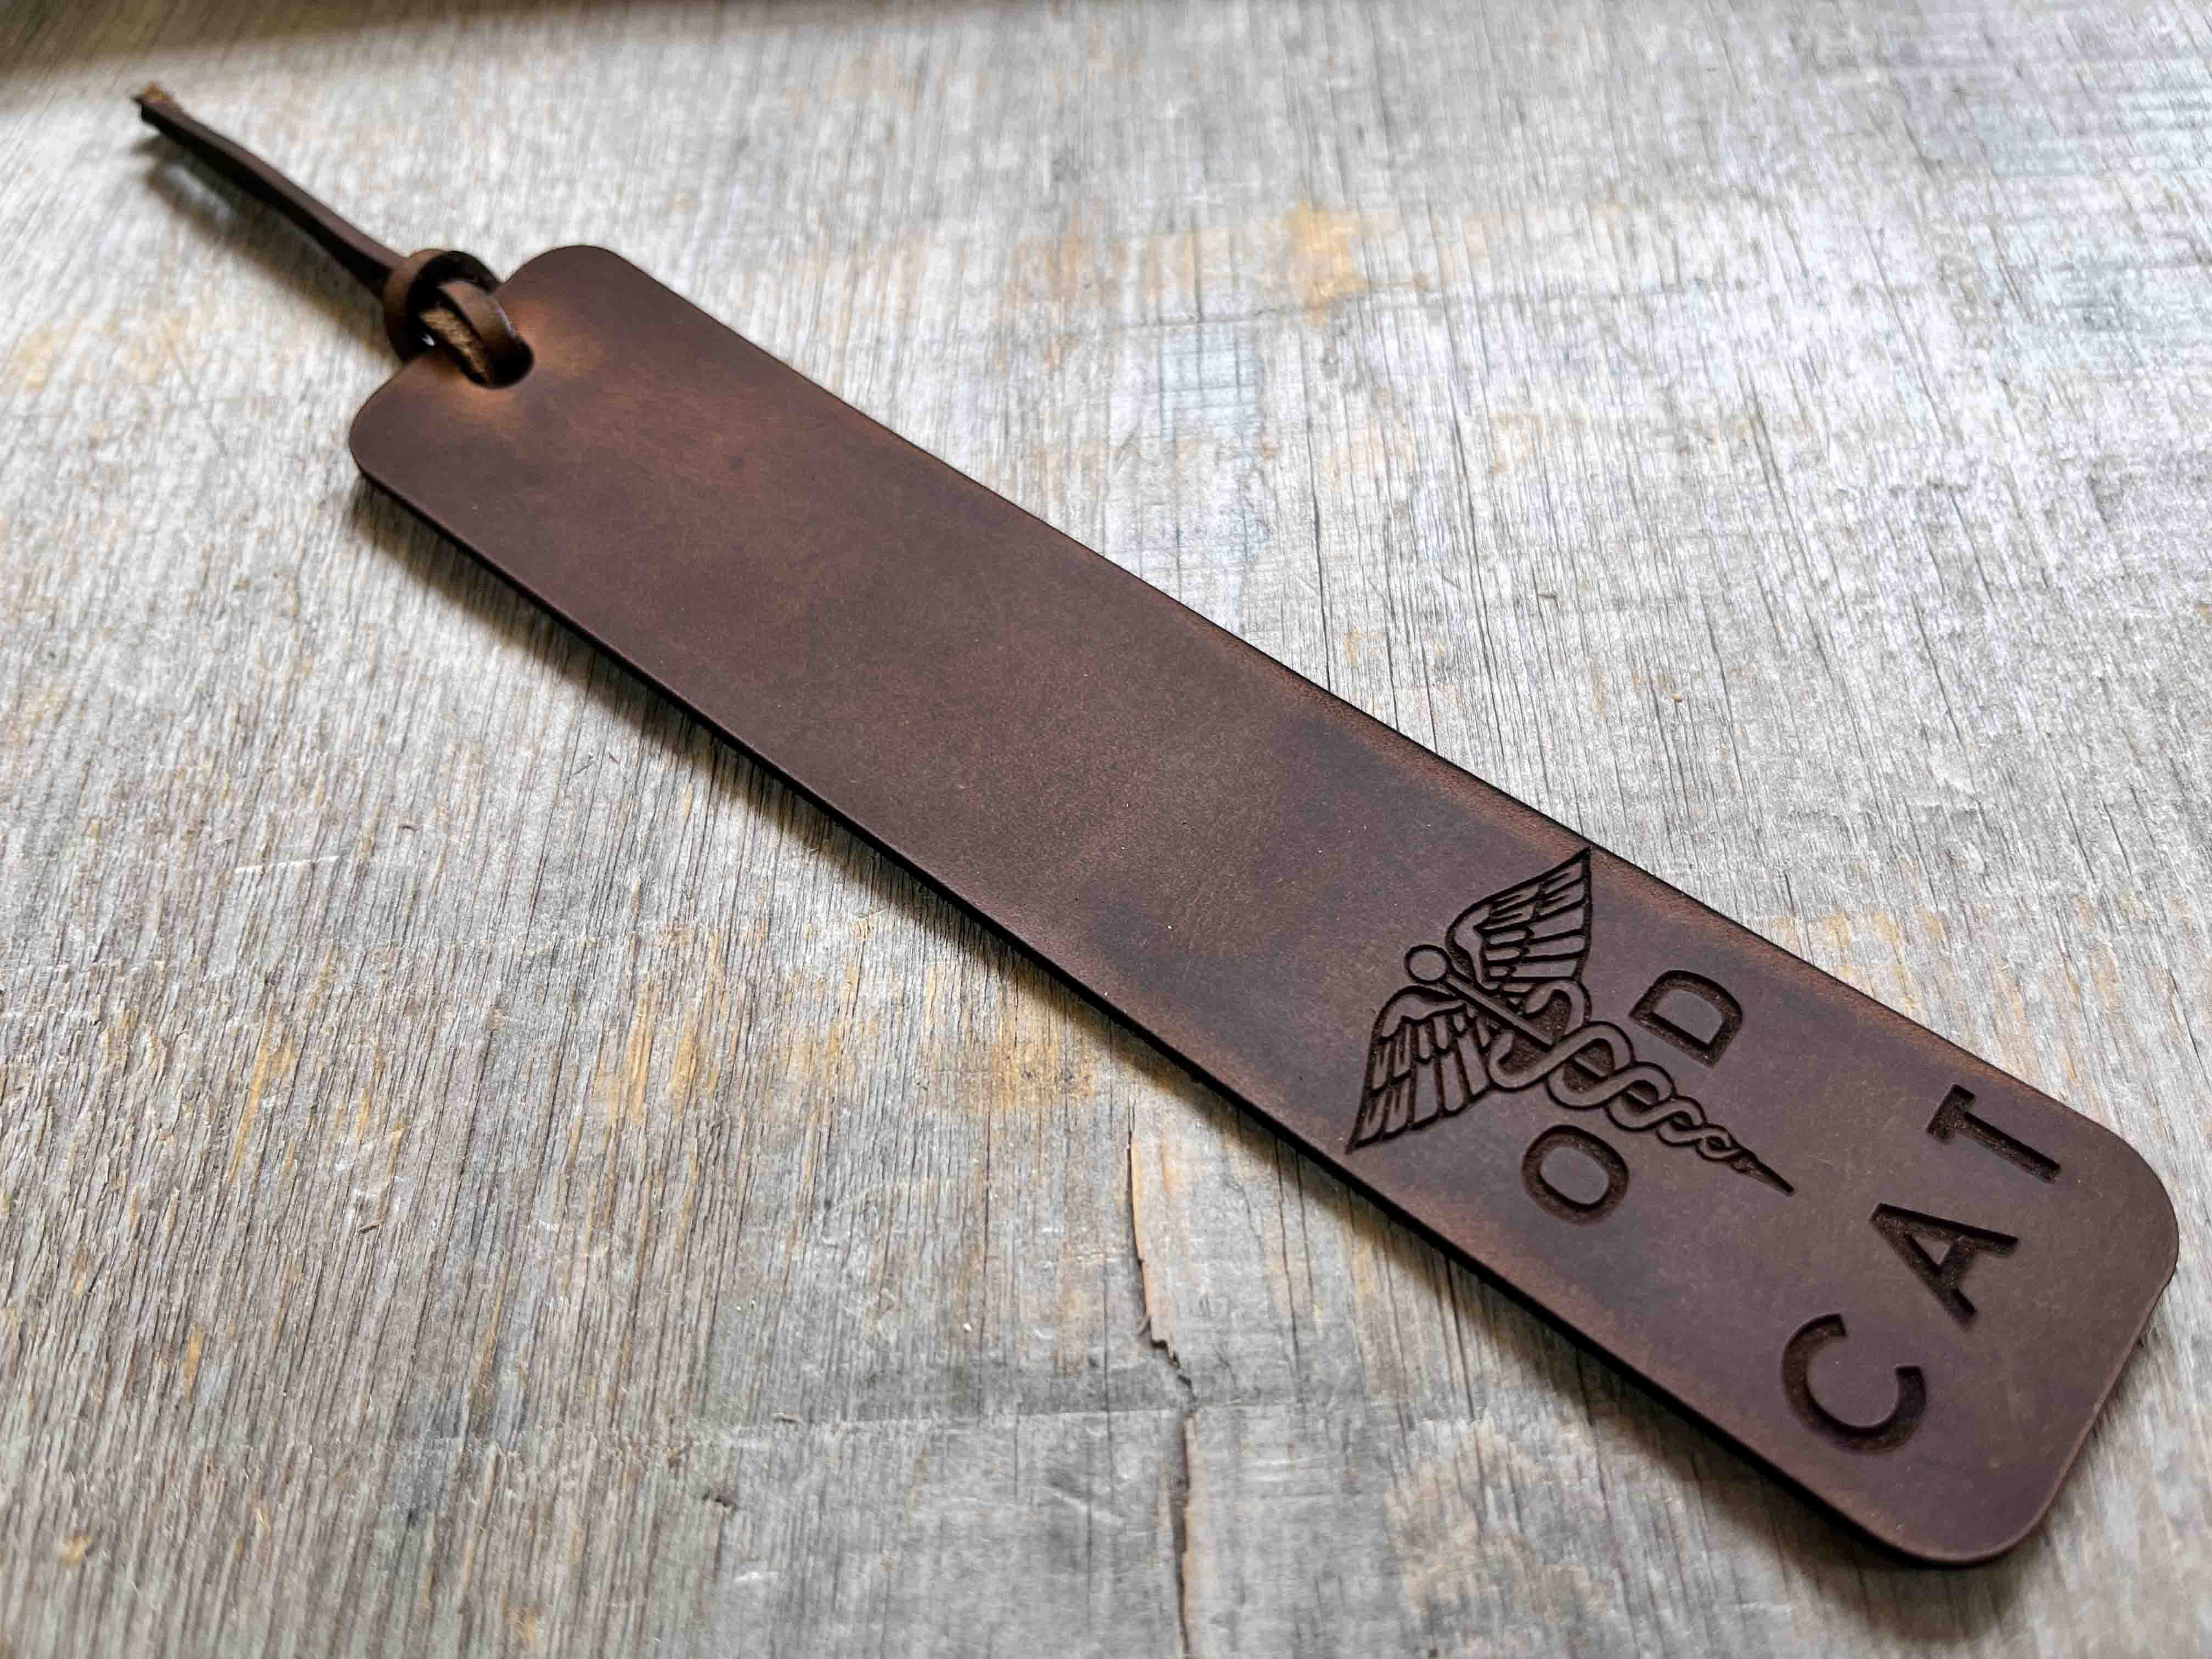 Bookmark Premium Leather Engraved.